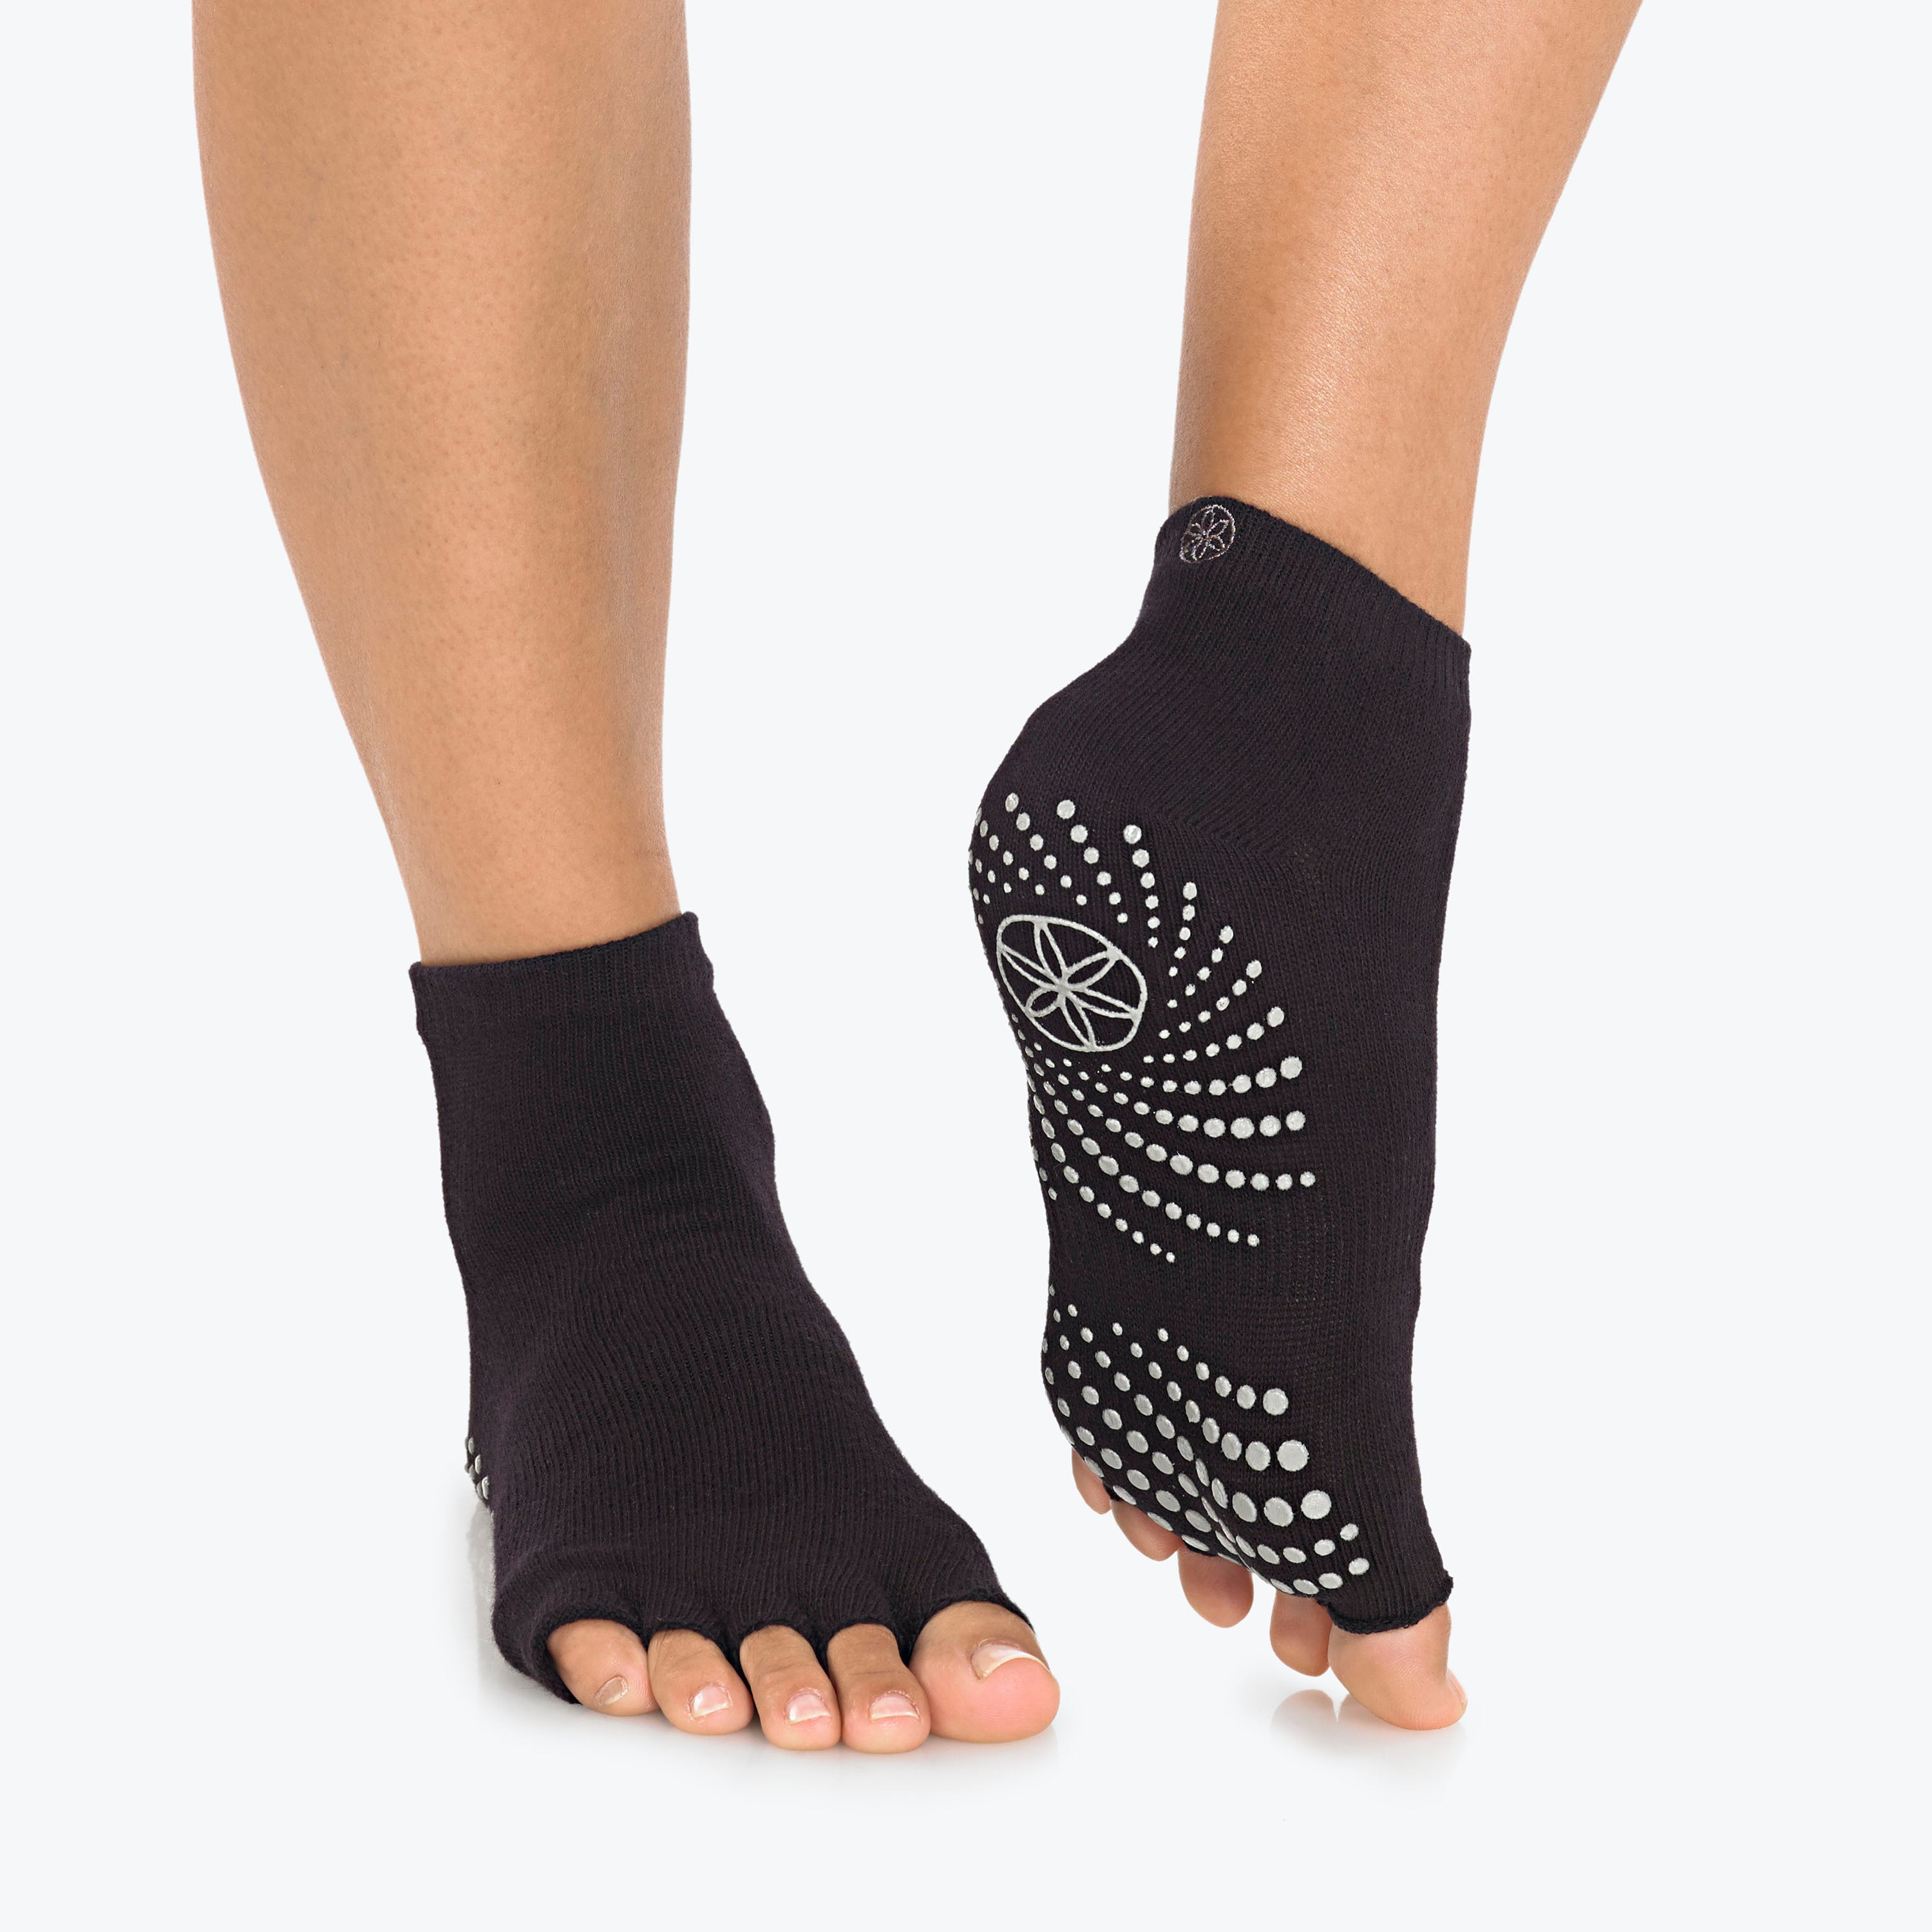 Yoga Toeless Socks Five Toes Non Slip Non Skid Sticky Grip Sock